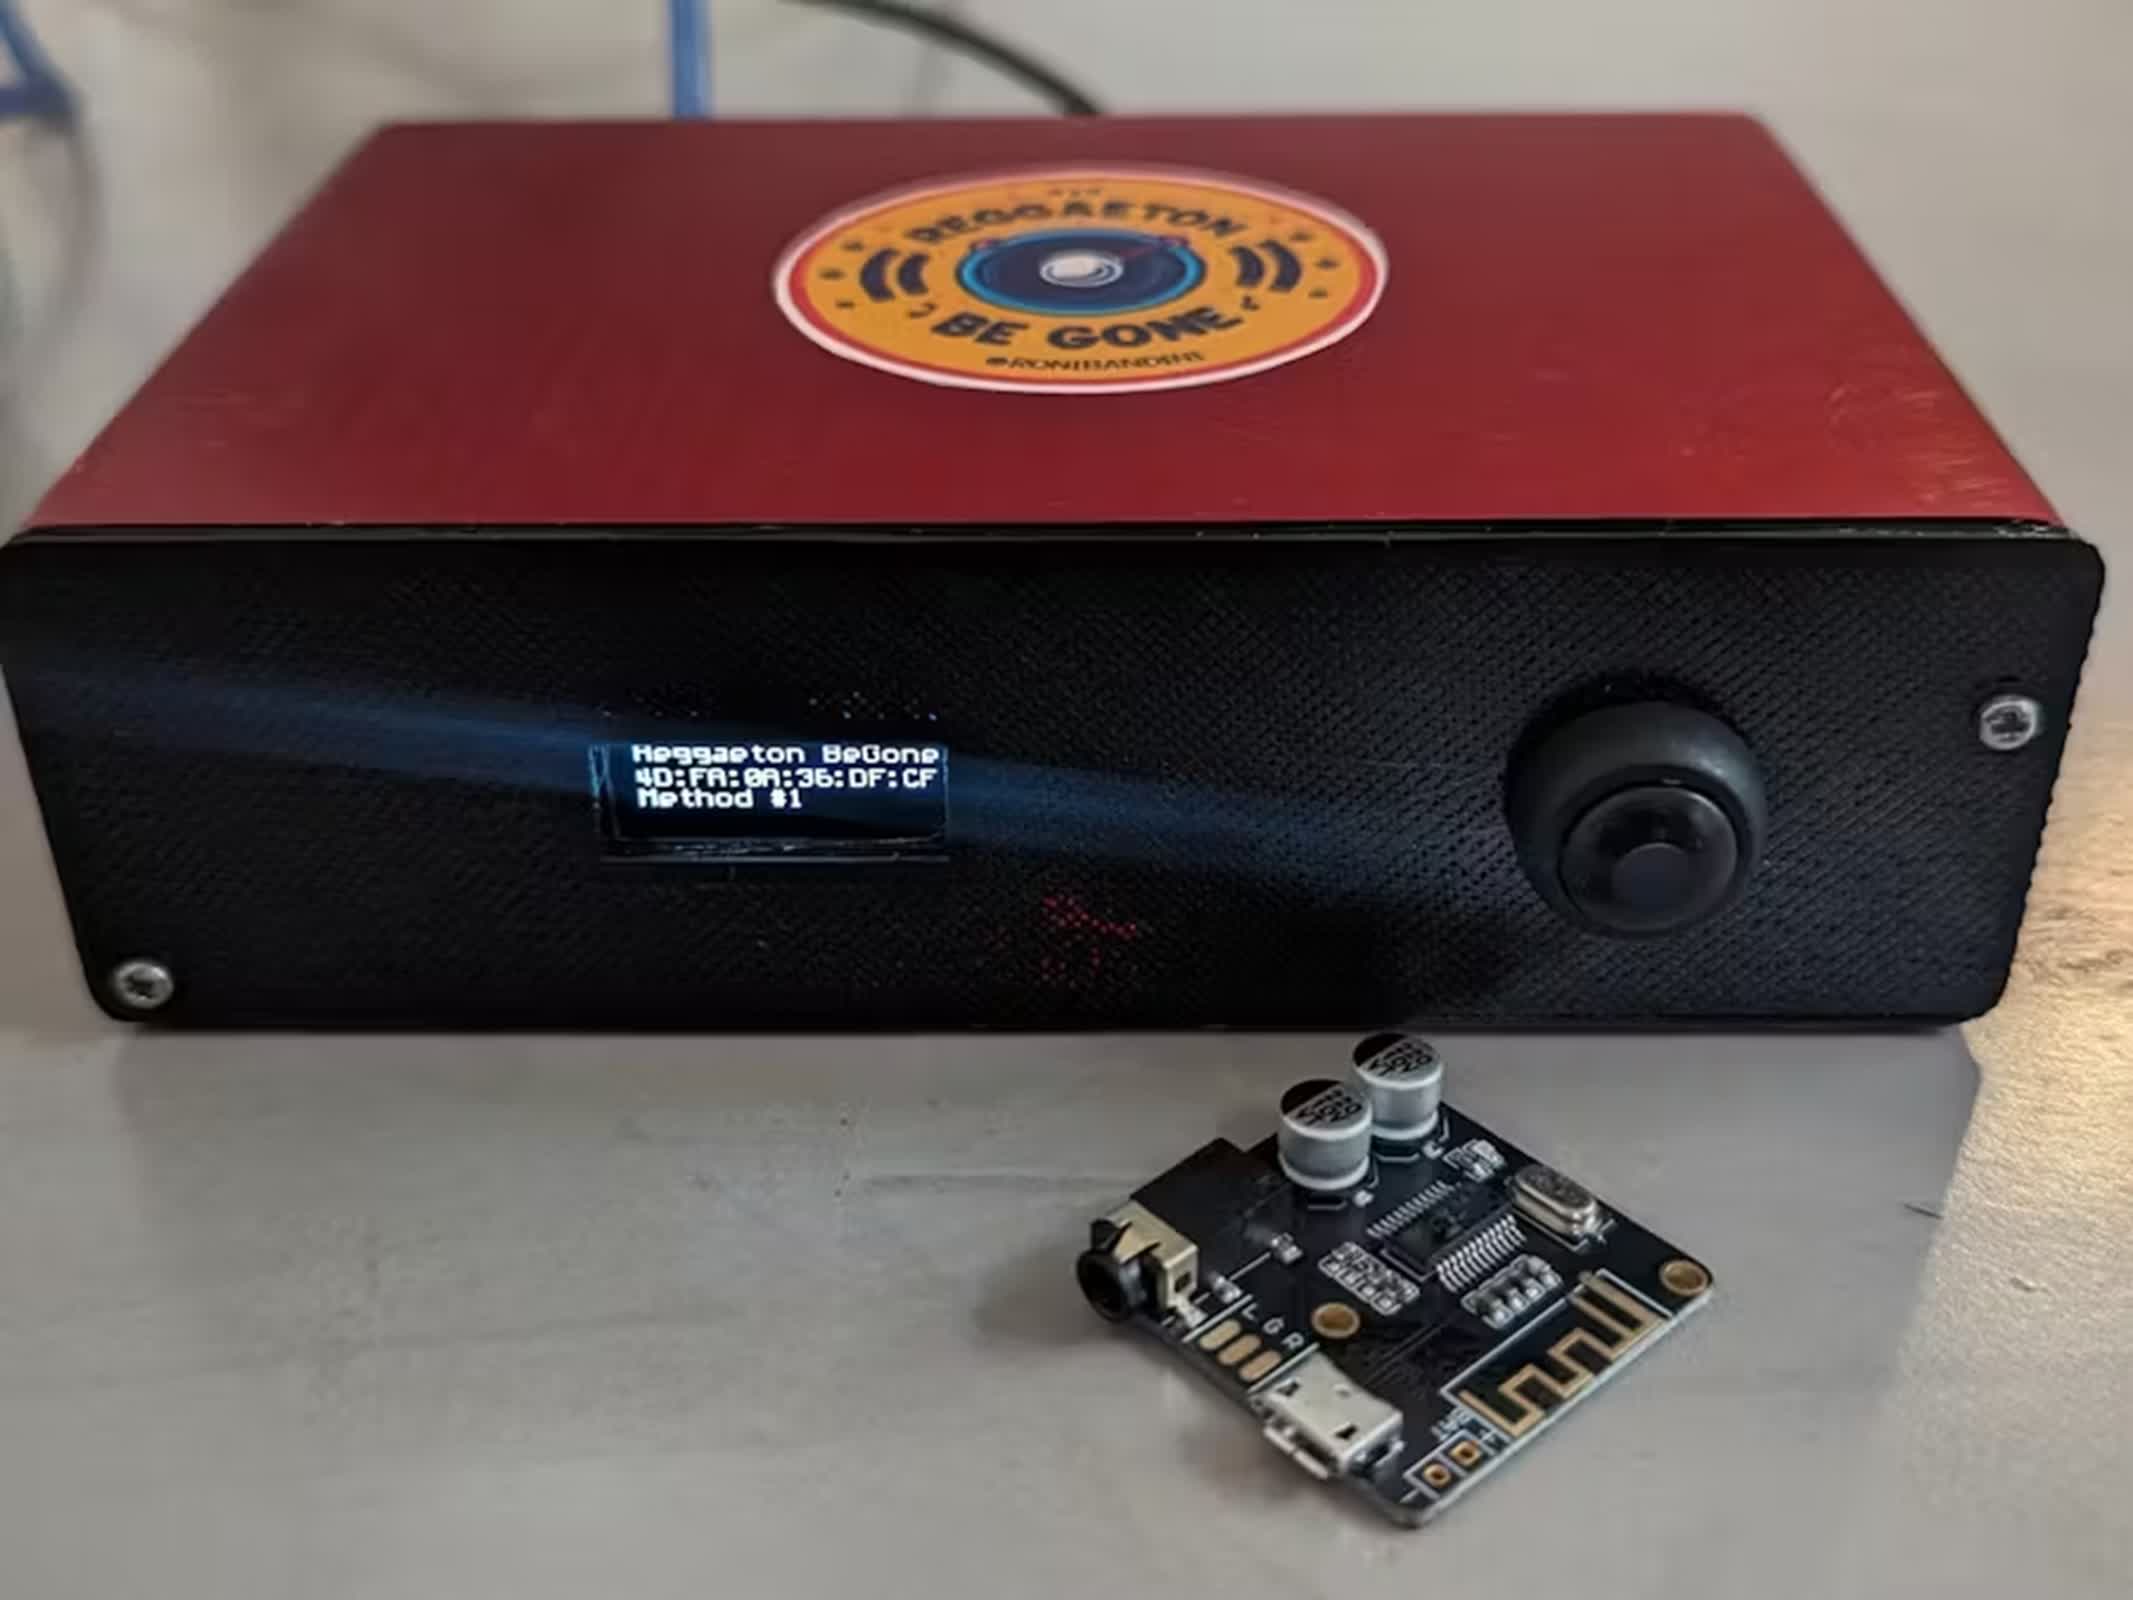 Maker construye un dispositivo para hackear los parlantes Bluetooth de los vecinos que transmitían música molesta